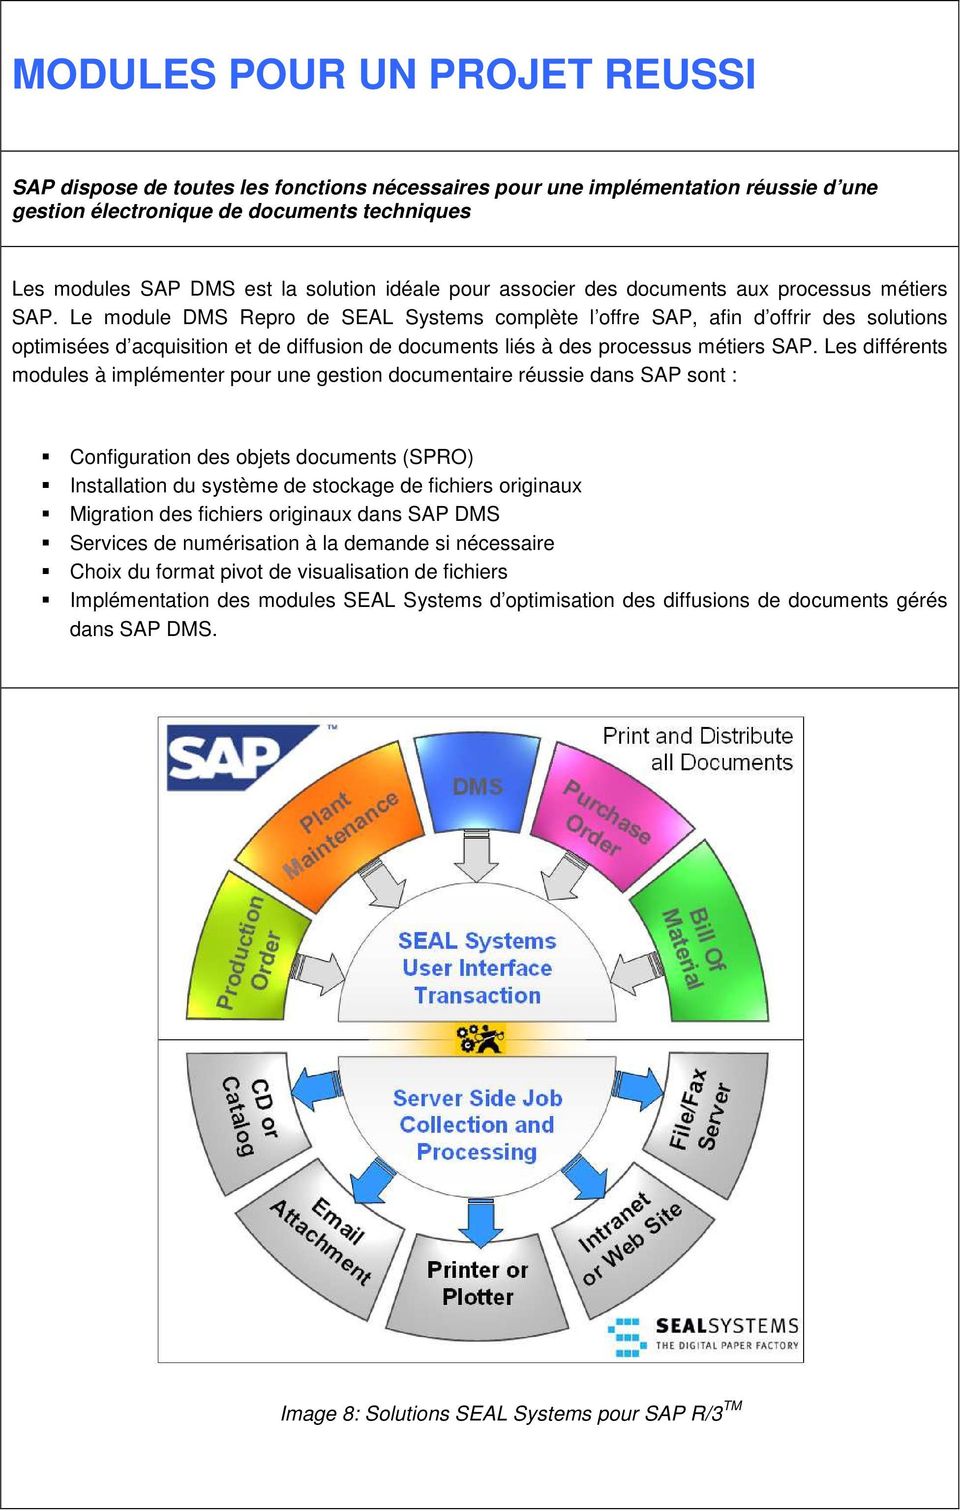 Le module DMS Repro de SEAL Systems complète l offre SAP, afin d offrir des solutions optimisées d acquisition et de diffusion de documents liés à des processus métiers SAP.